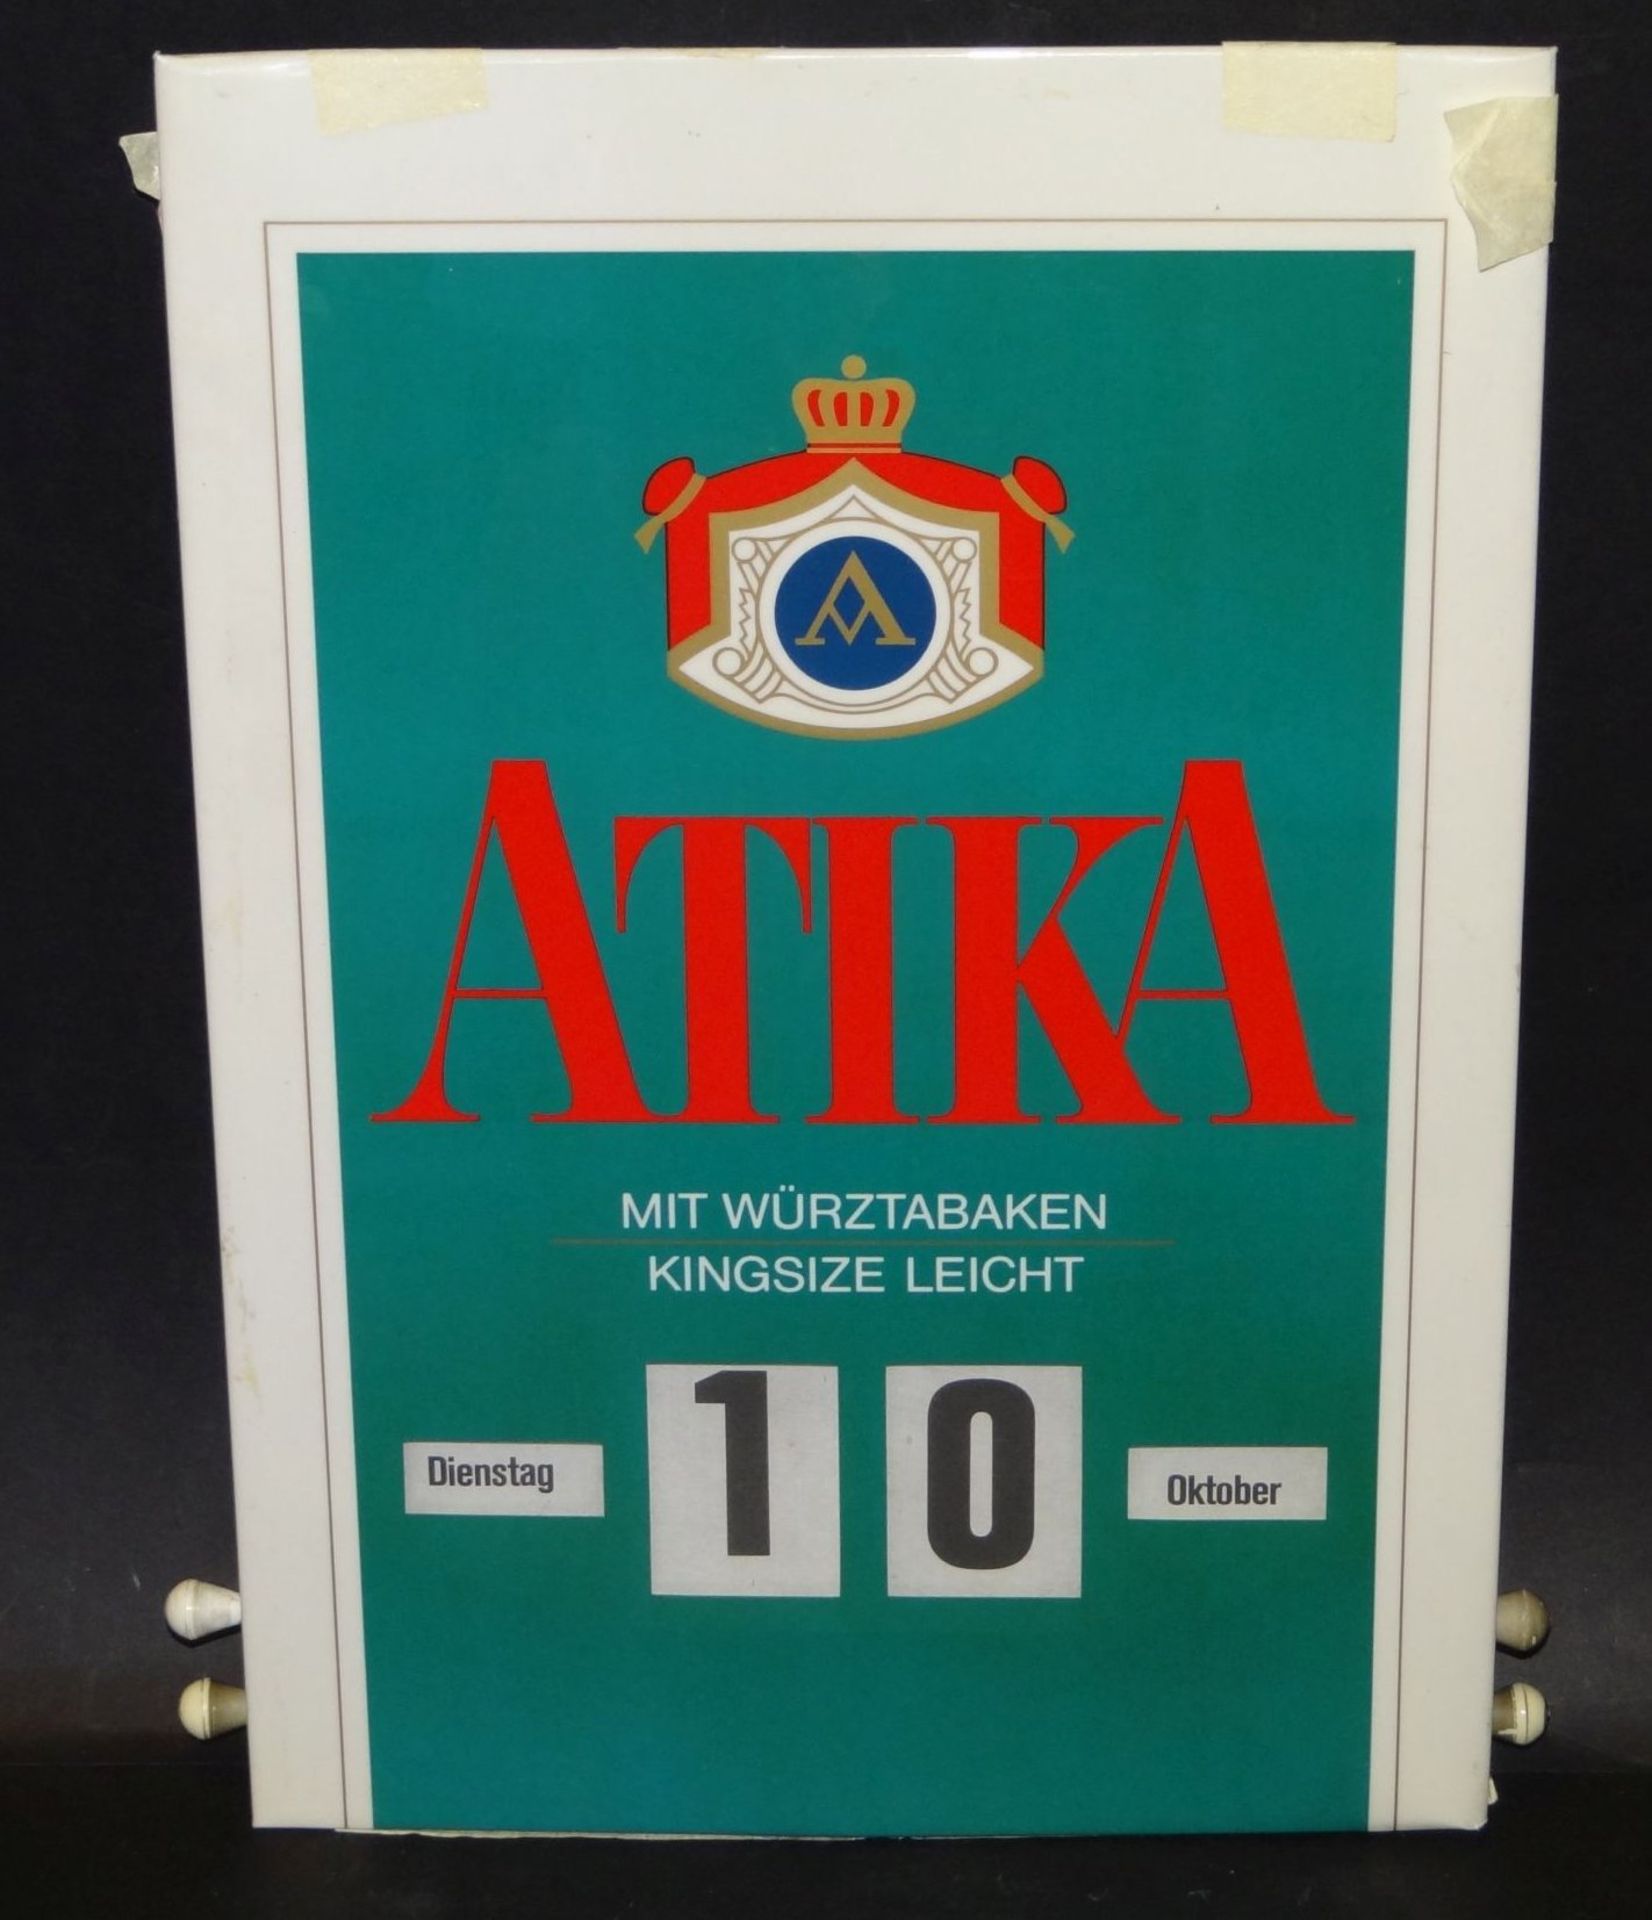 Immerwährender Wandkalender "Atika" Zigaretten, 36x24,5 cm, Alters-u. Gebrauchsspure